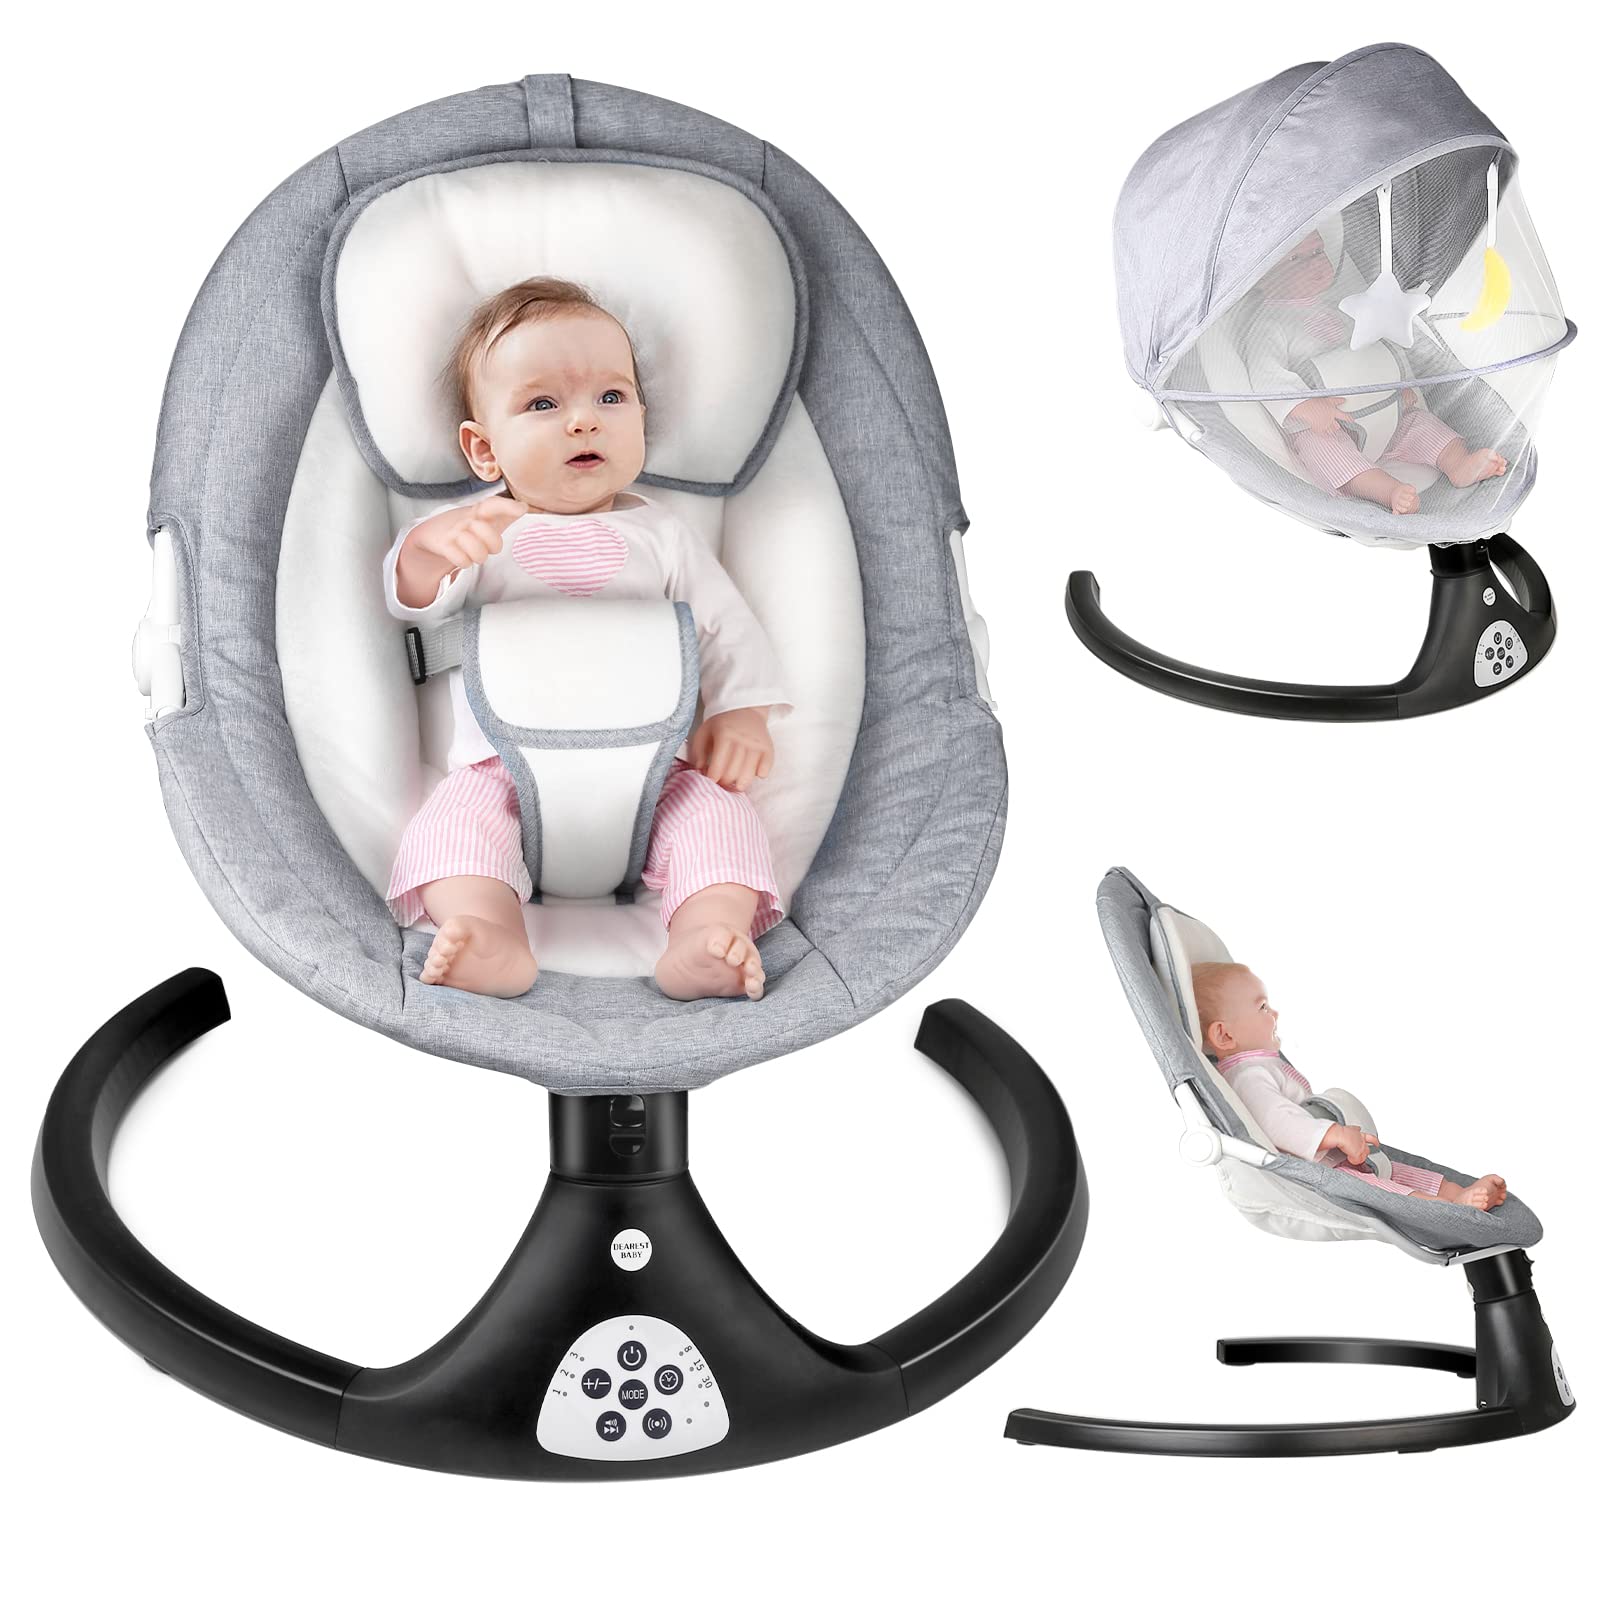 MISSAA Baby Swing - Balancín eléctrico Bluetooth para bebés con 5 velocidades de giro, 3 posiciones de asiento, 12 música, control remoto